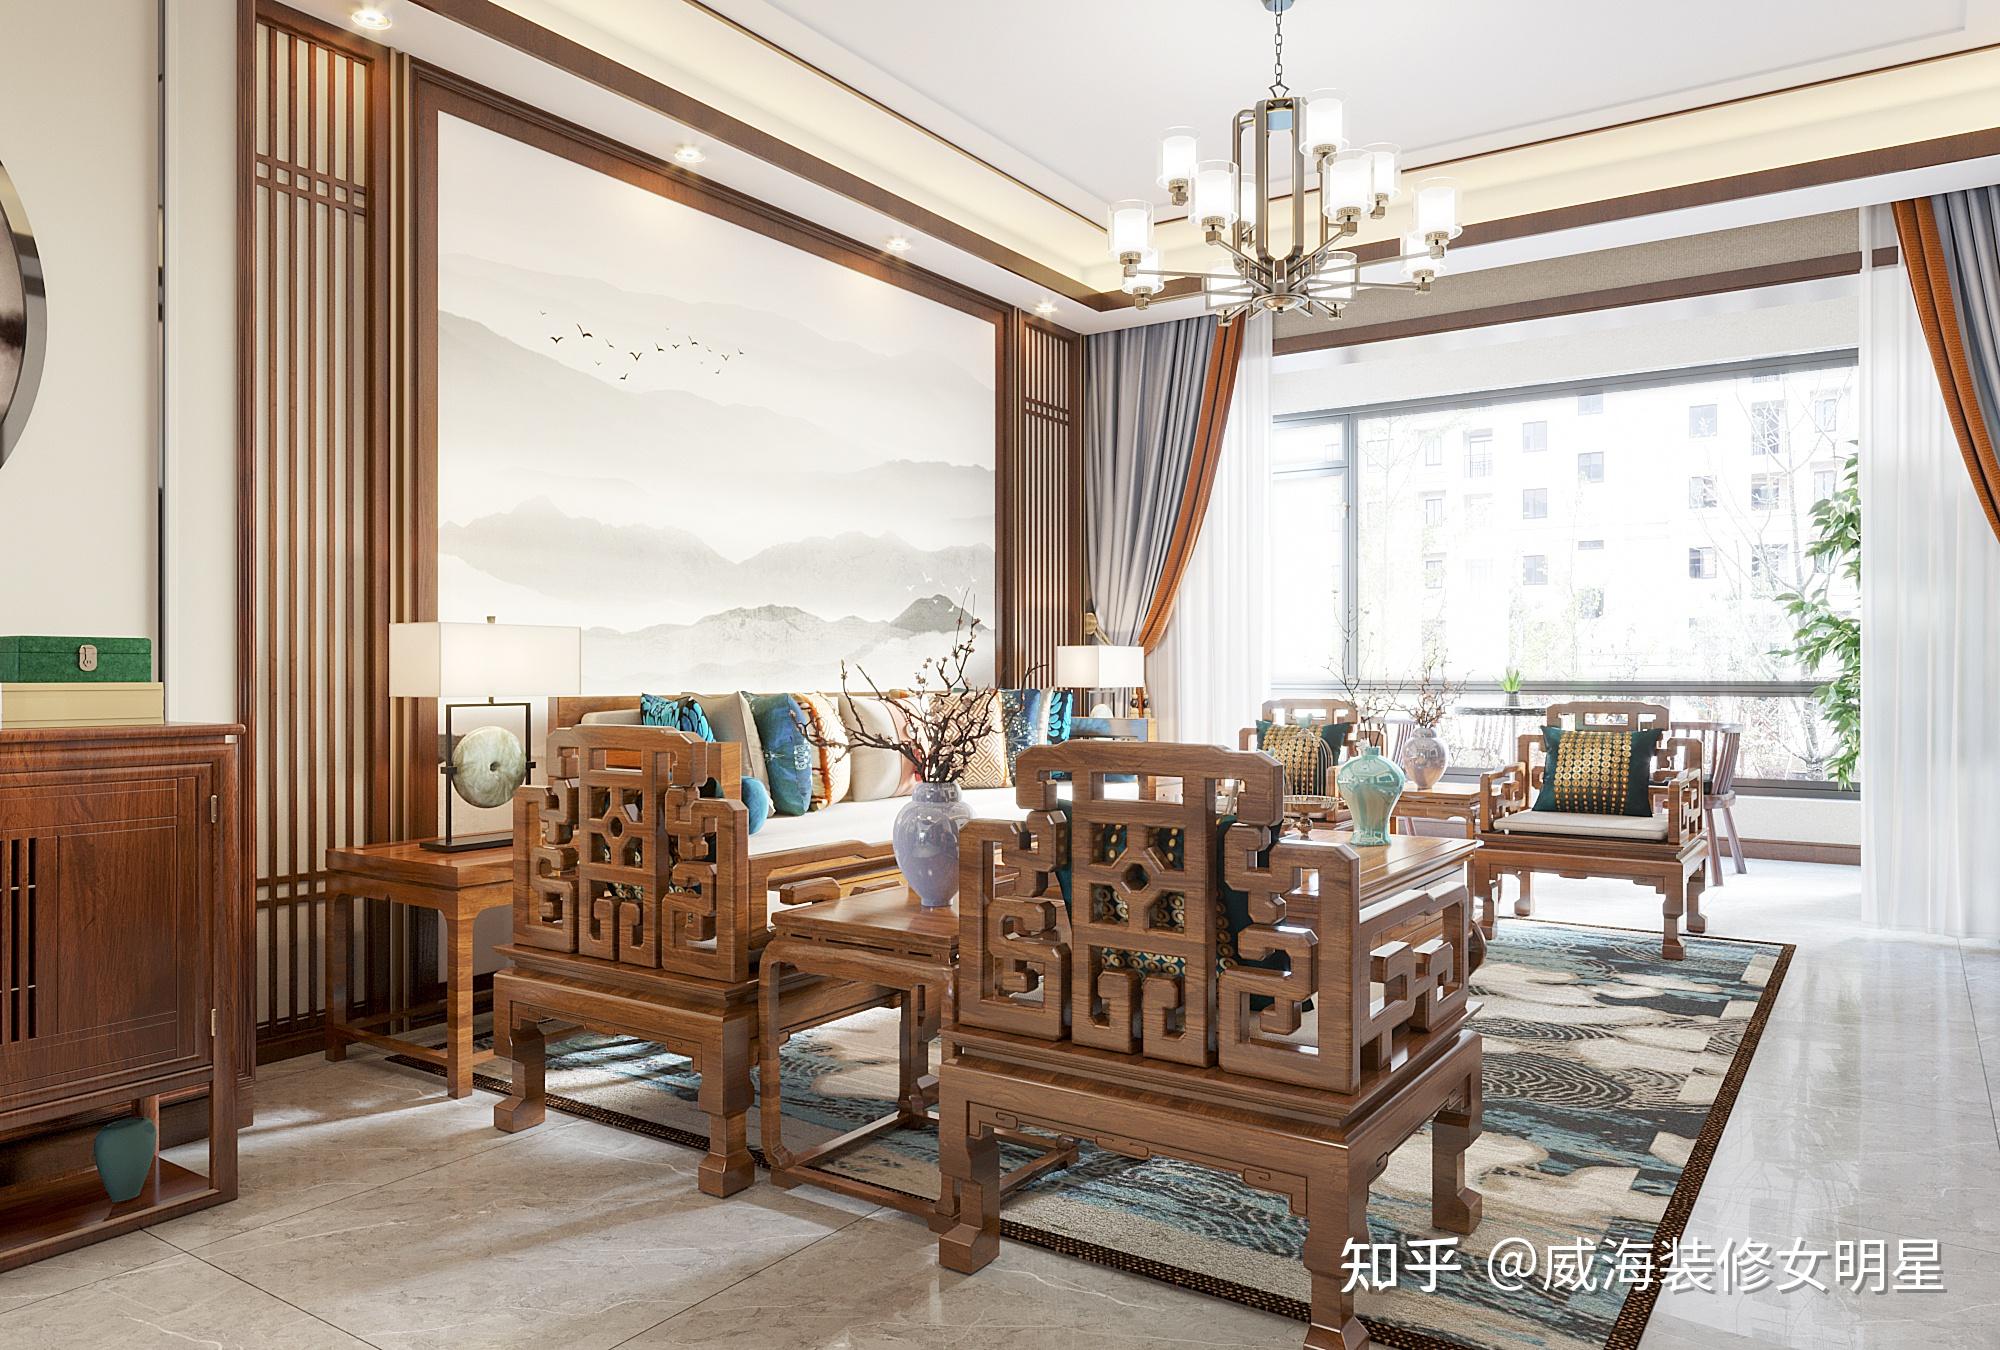 67新中式风格还拥有明清时期家居家具观念的精粹,将当中的经典原素